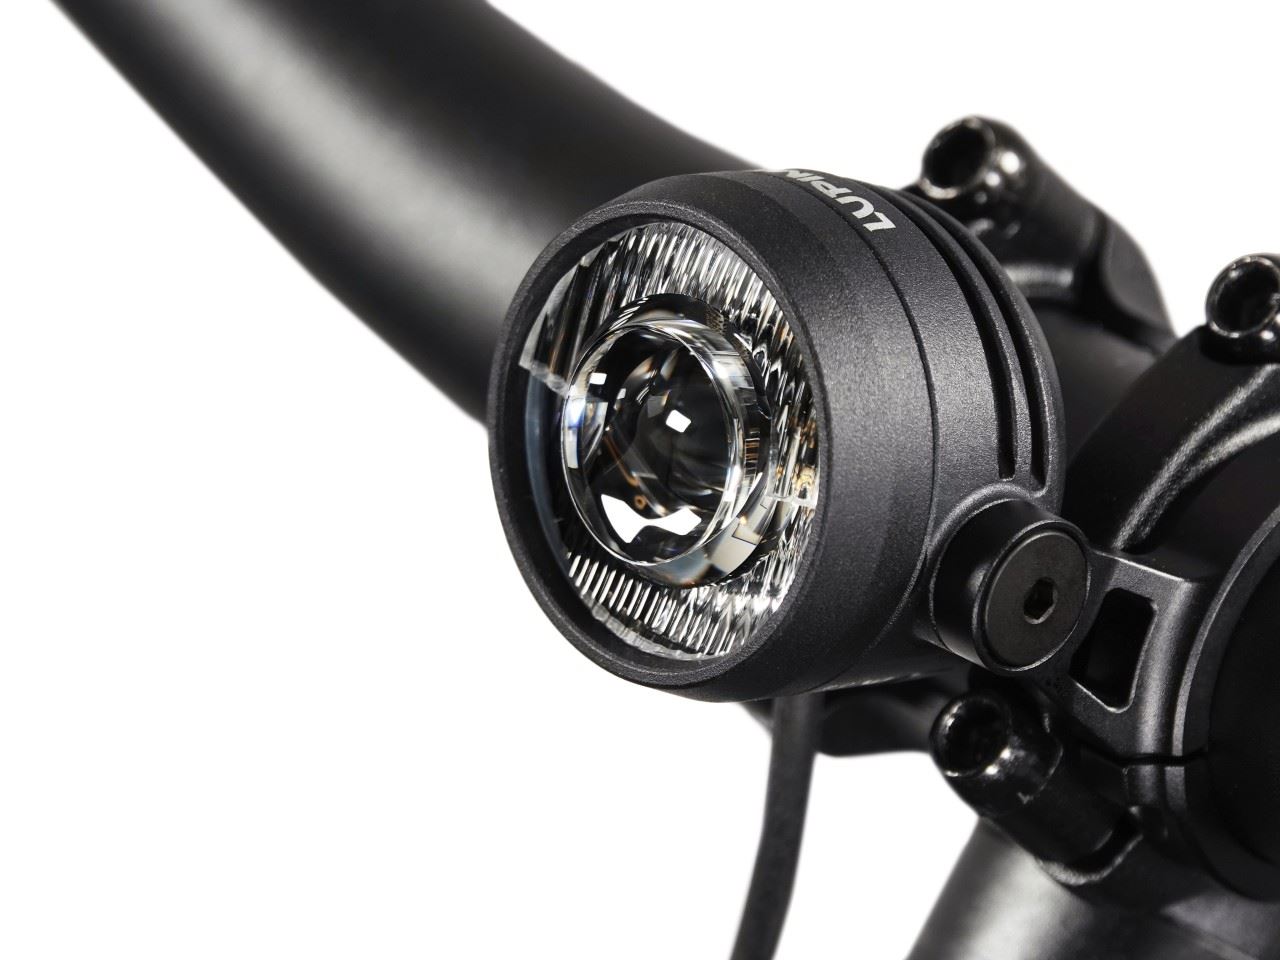 Produktbild von Lupine SL Nano für Shimano E-Bikes, LED Fahrradlampe, Lenkerhalter 31,8mm, 600 Lumen